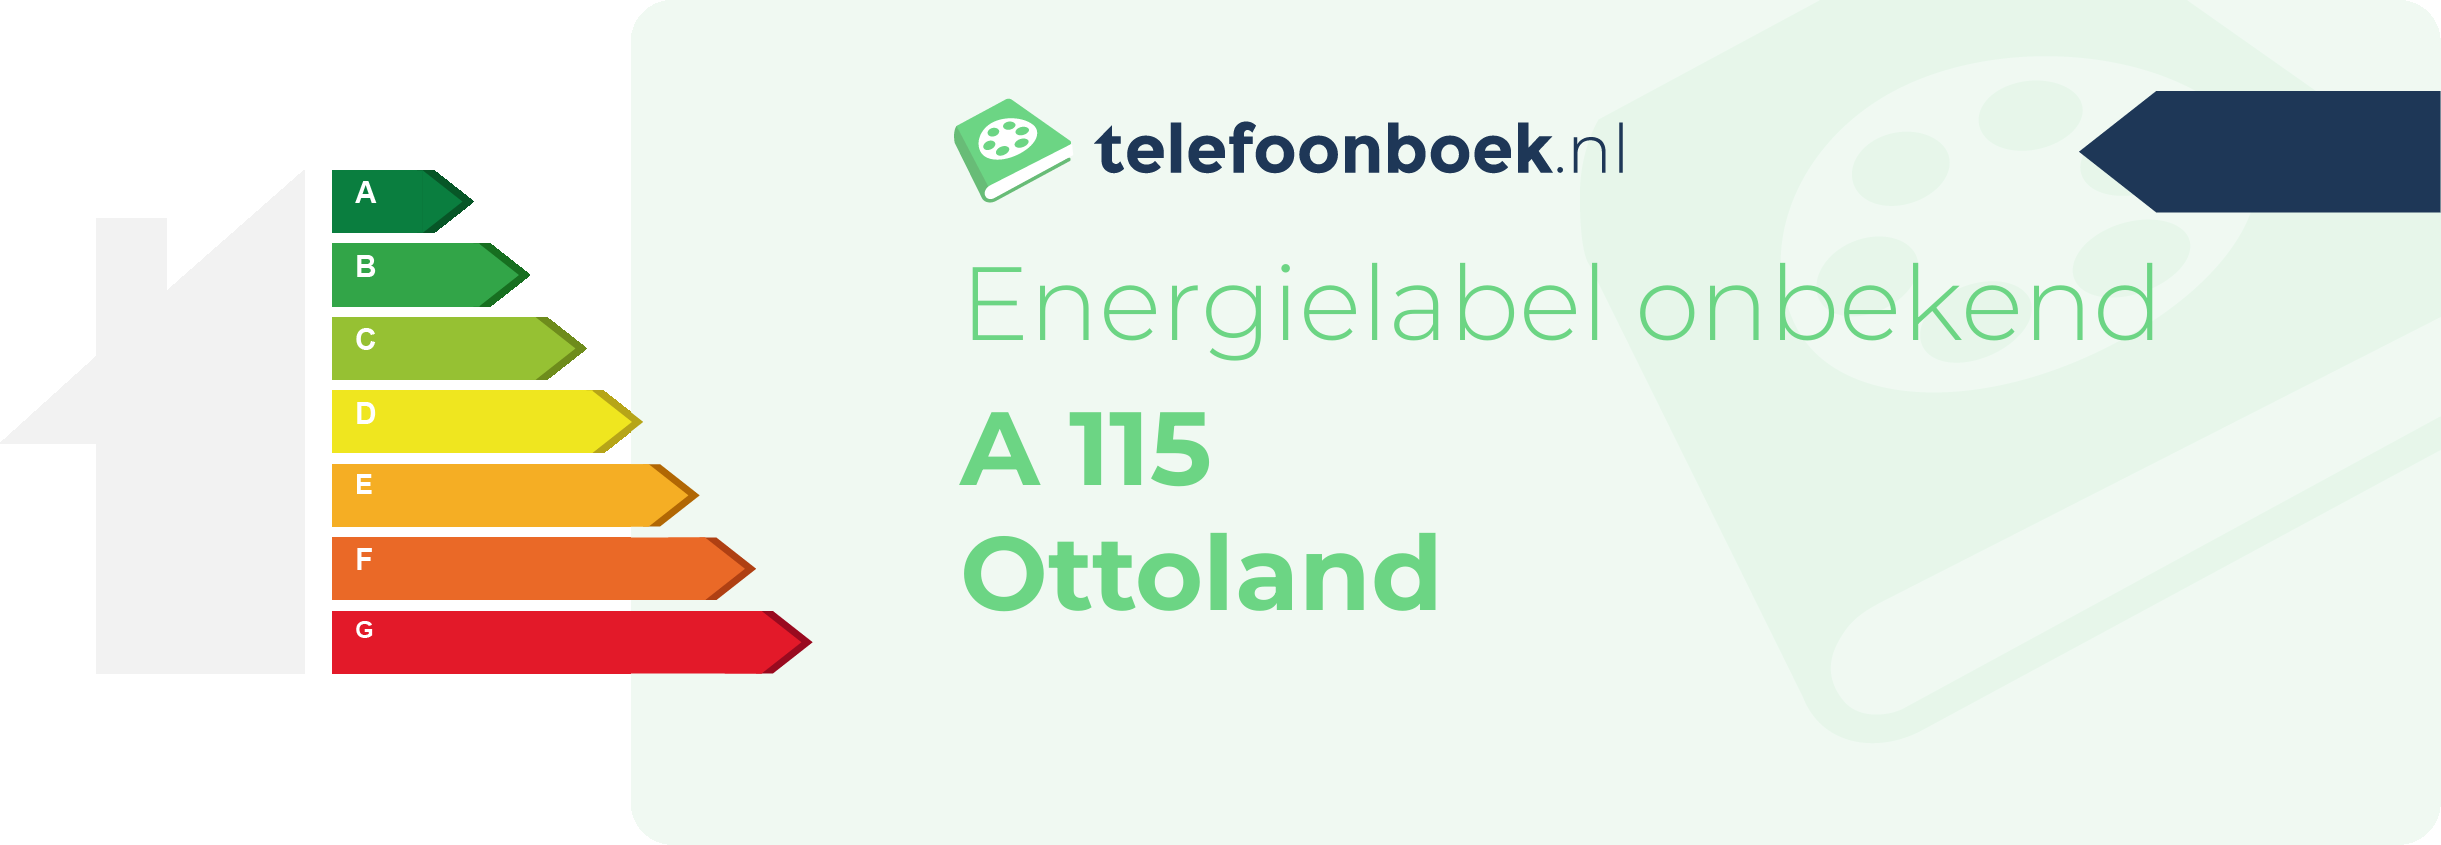 Energielabel A 115 Ottoland